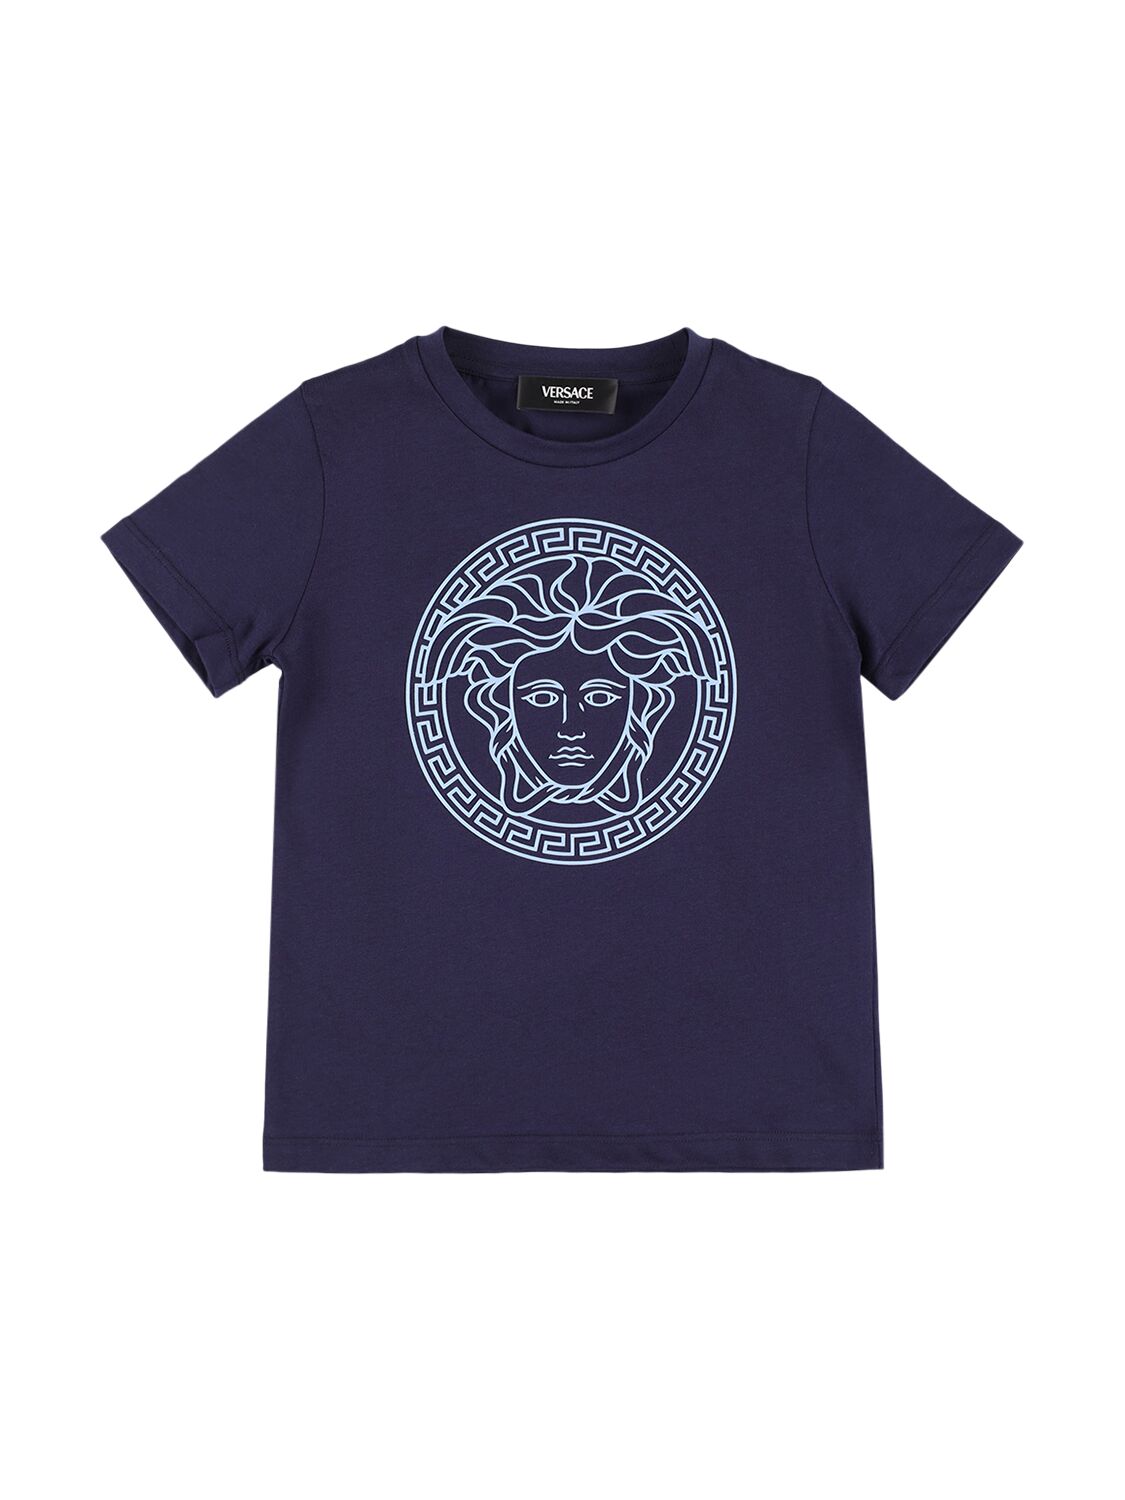 Versace Kids' T-shirt Aus Baumwolljersey Mit Medusadruck In Dunkelblau